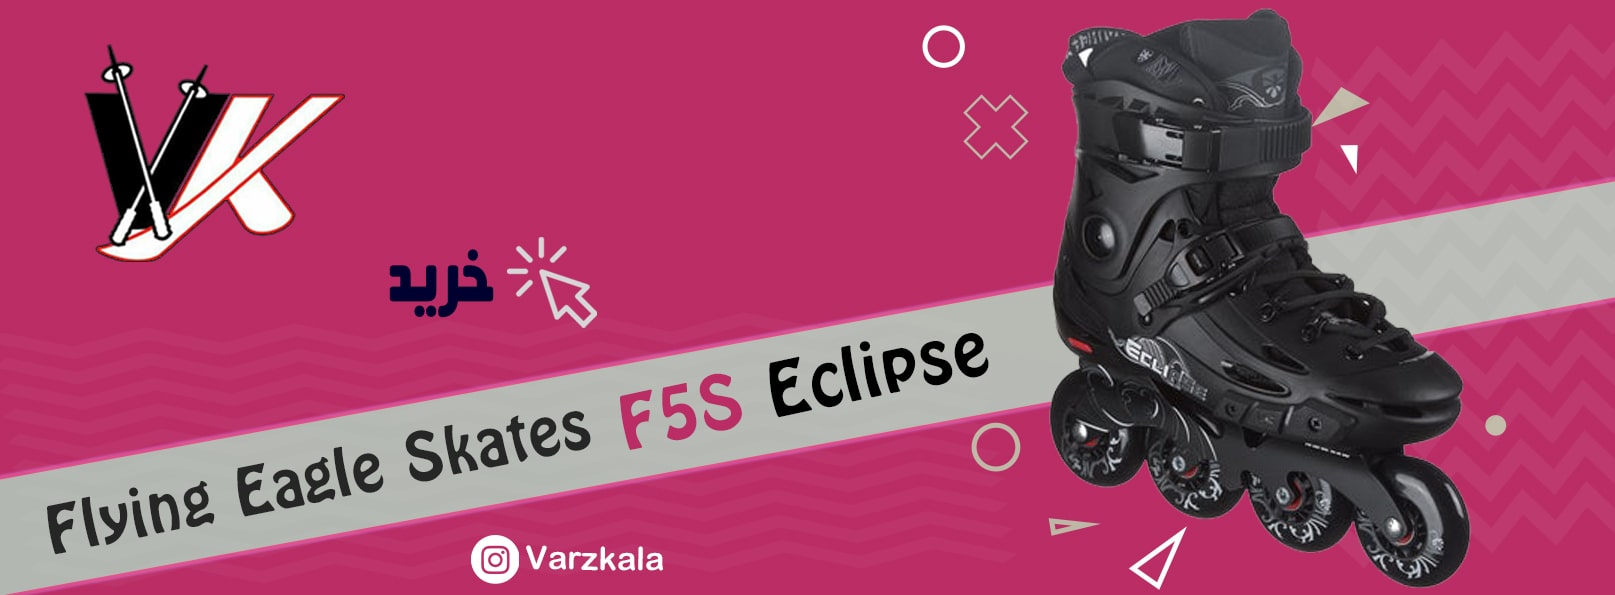 اسکیت فلایینگ ایگل F5s Eclipse